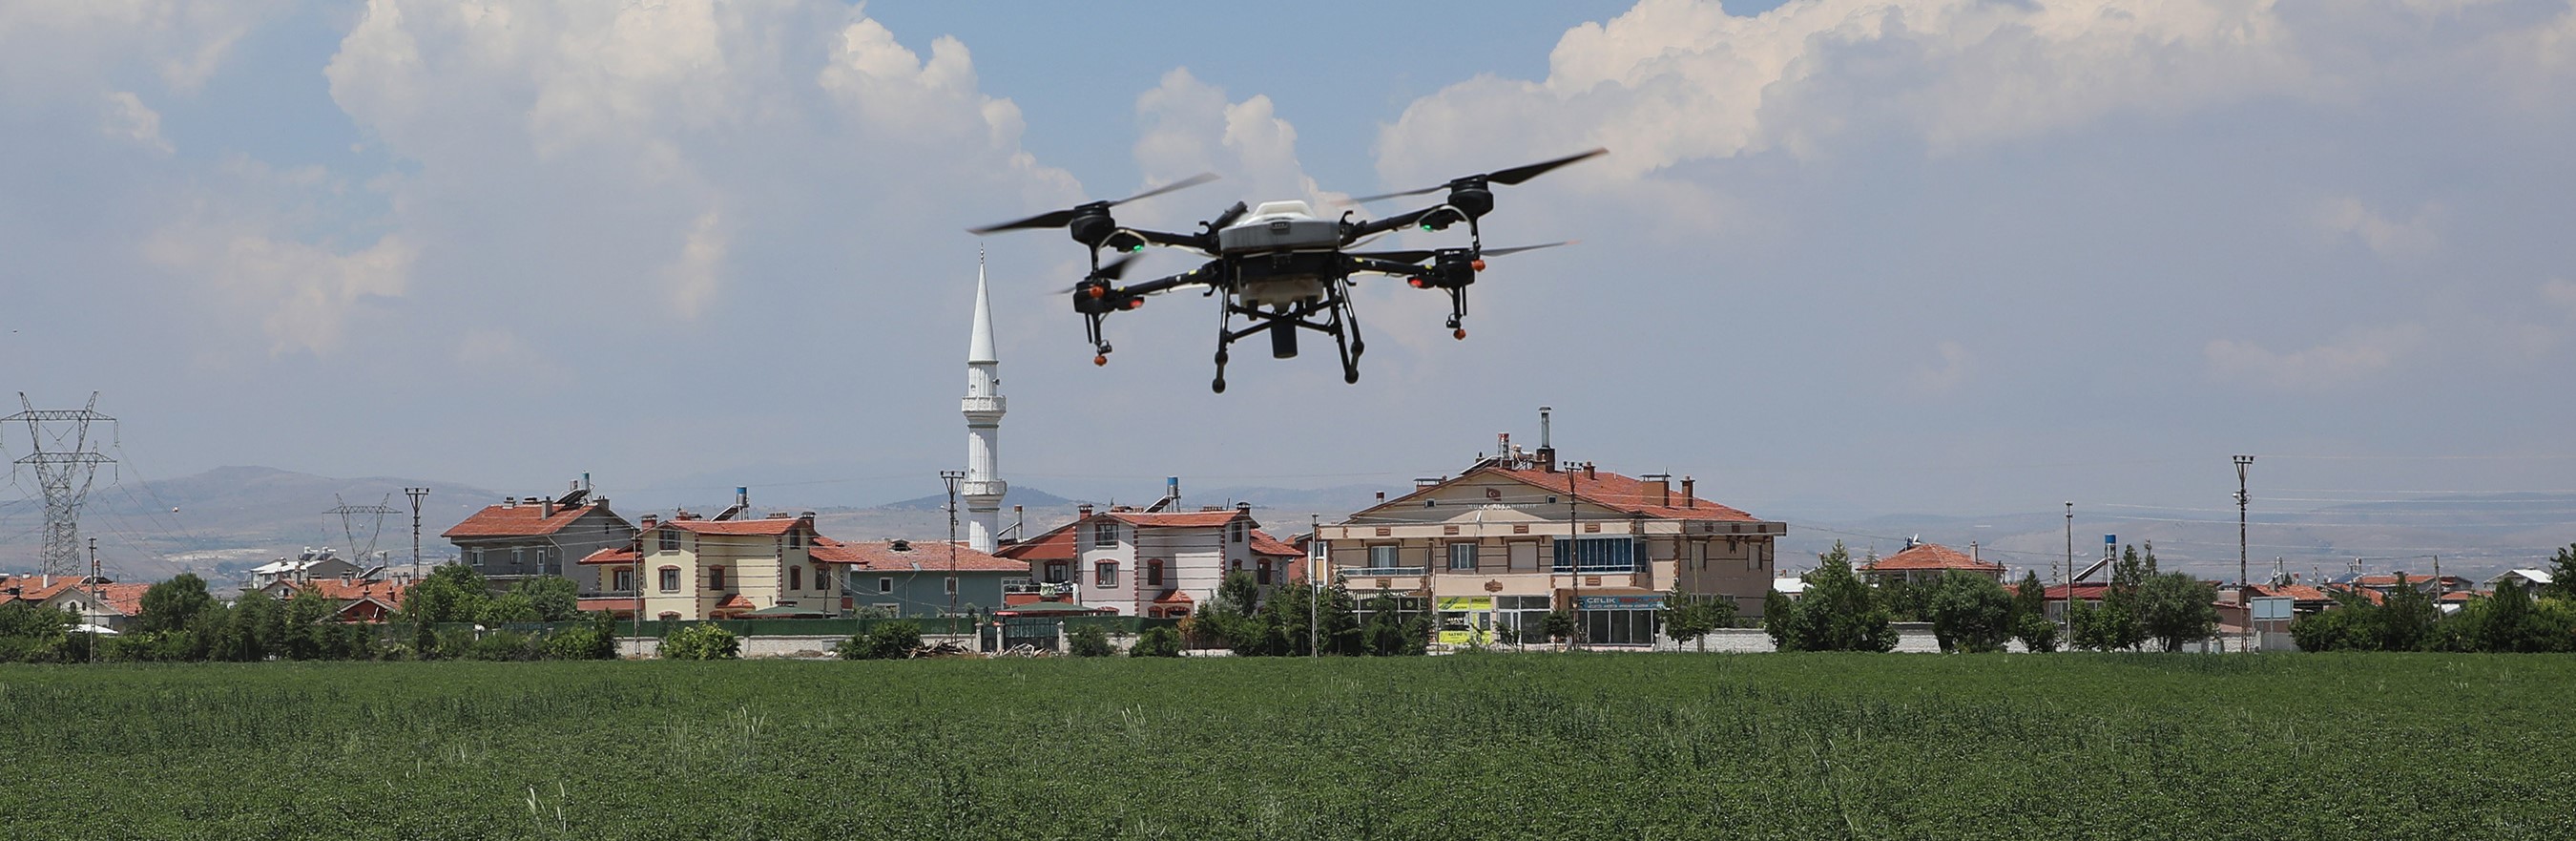 Konya Büyükşehir tarımsal drone teknolojisiyle verimliliği artırıyor